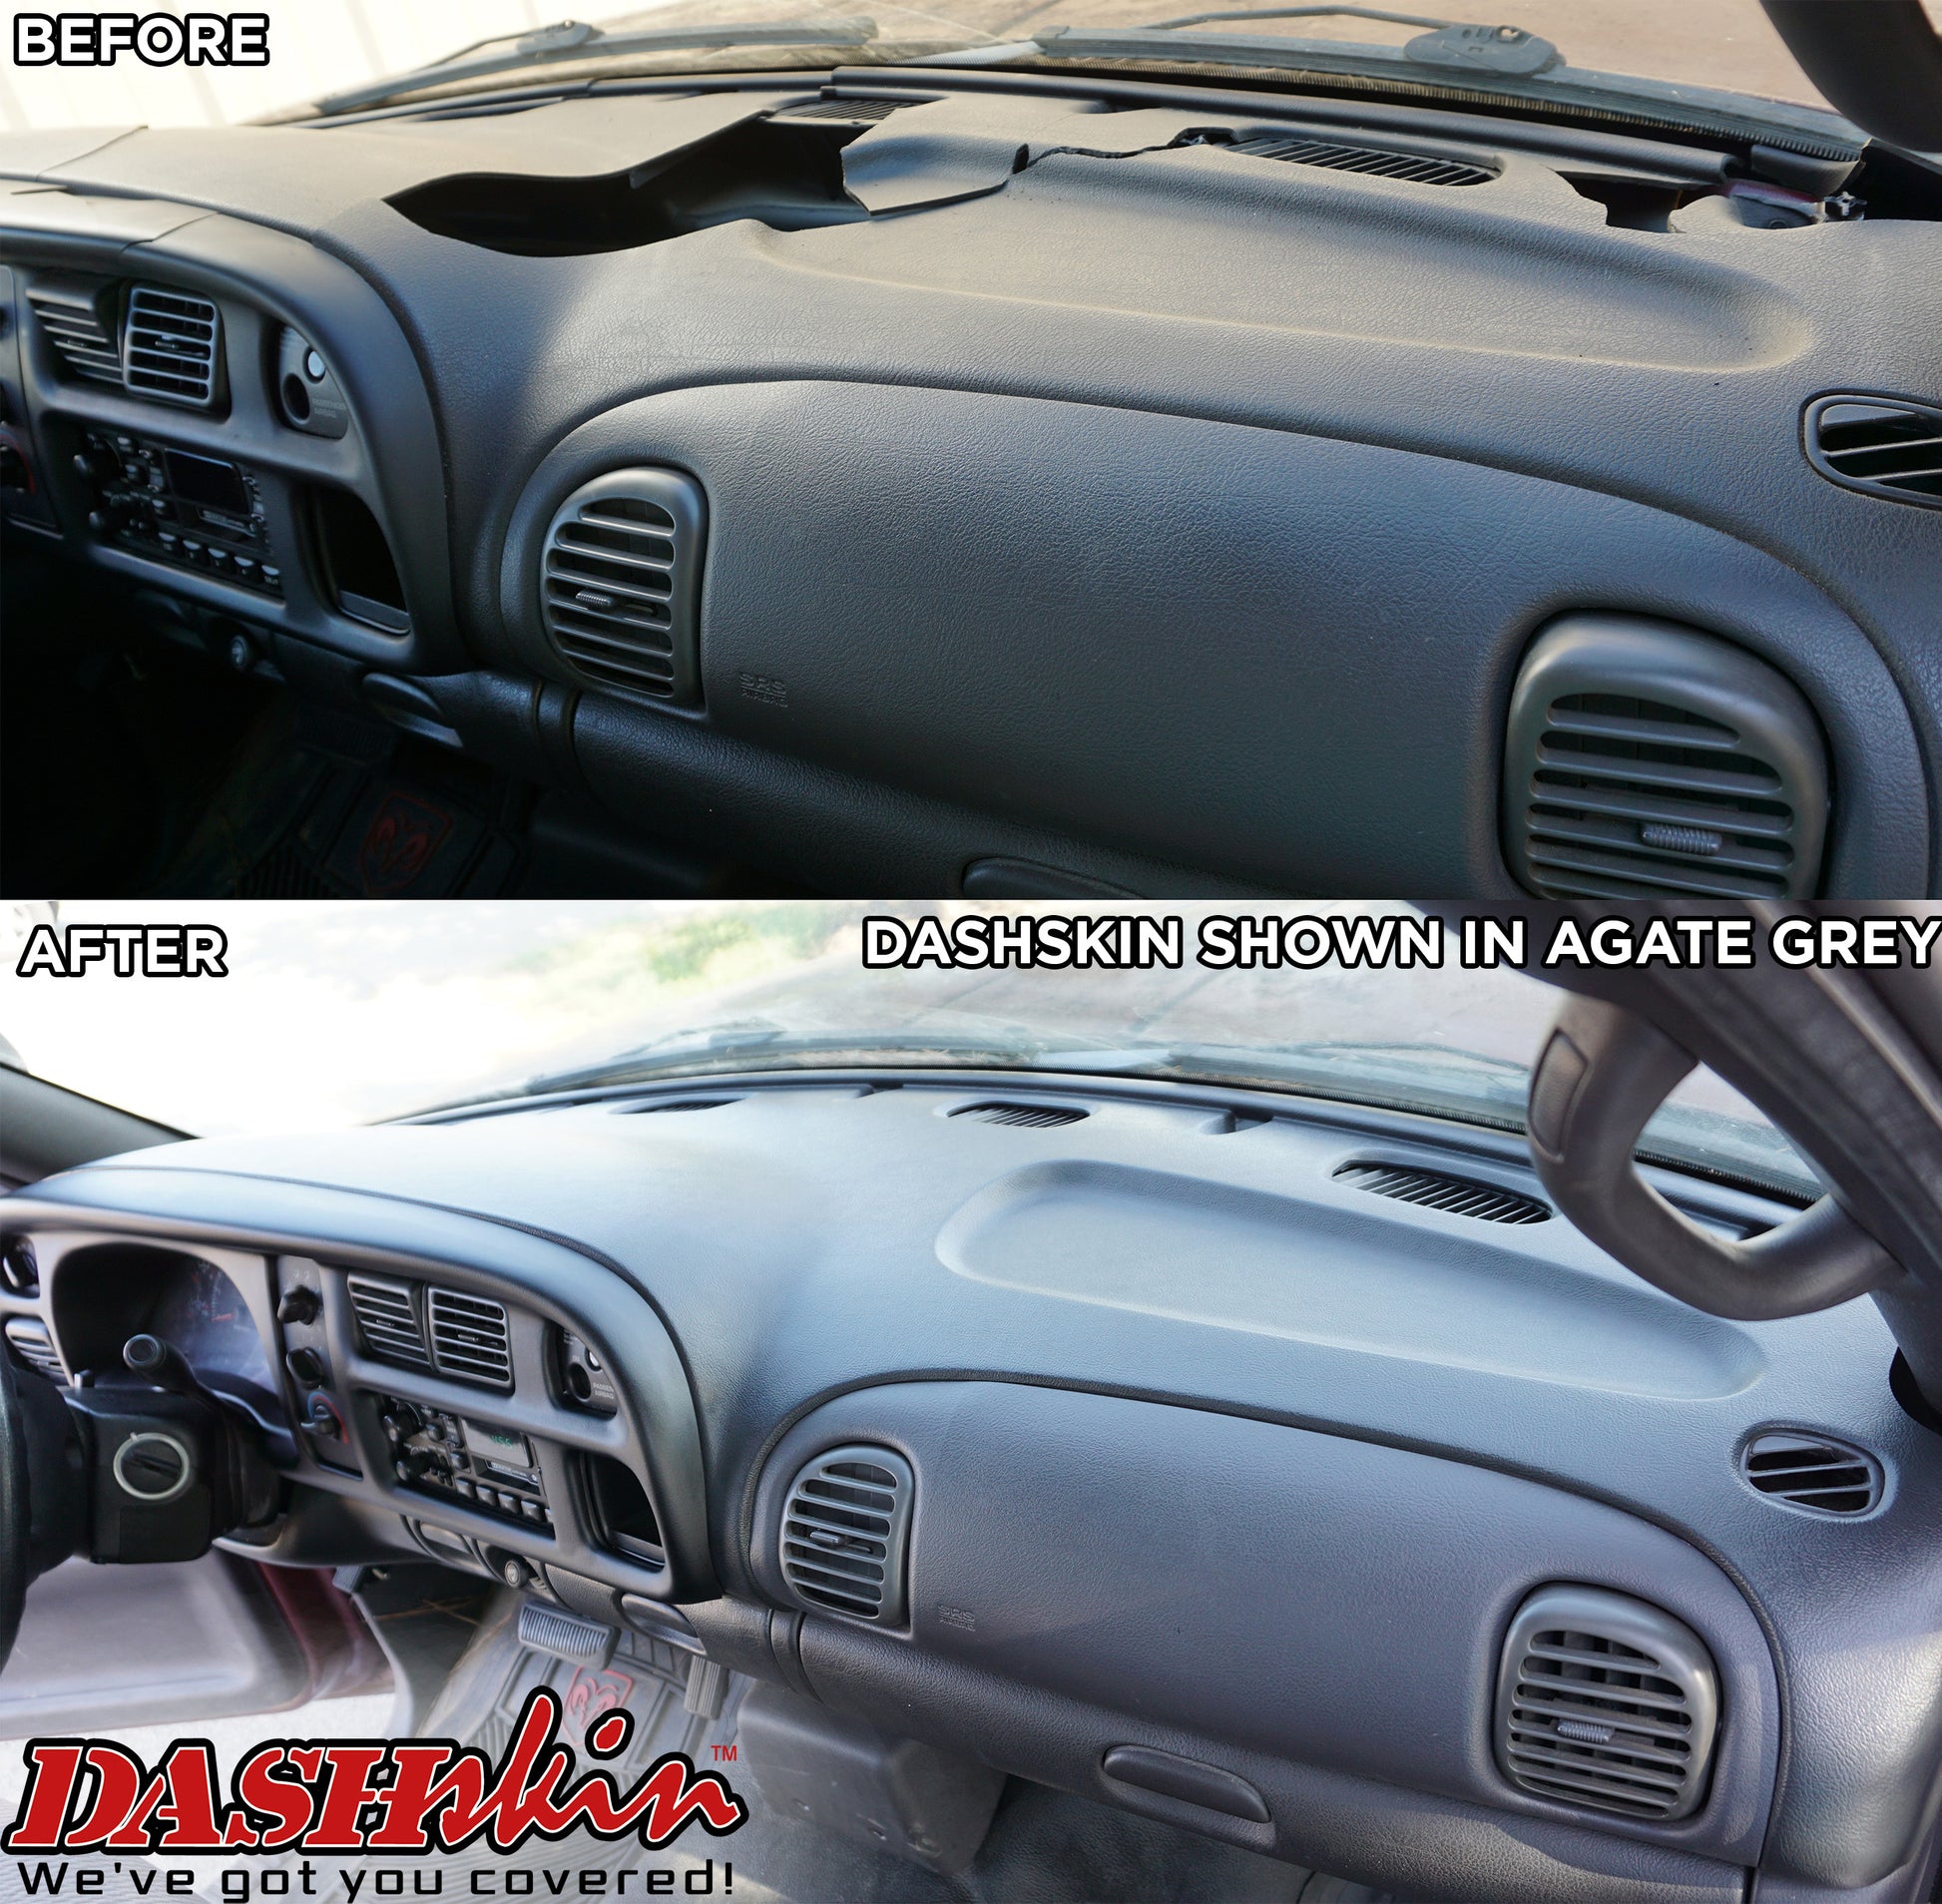 98-01 Dodge Ram Dash Skin Cap Cover Overlay – DashSkin